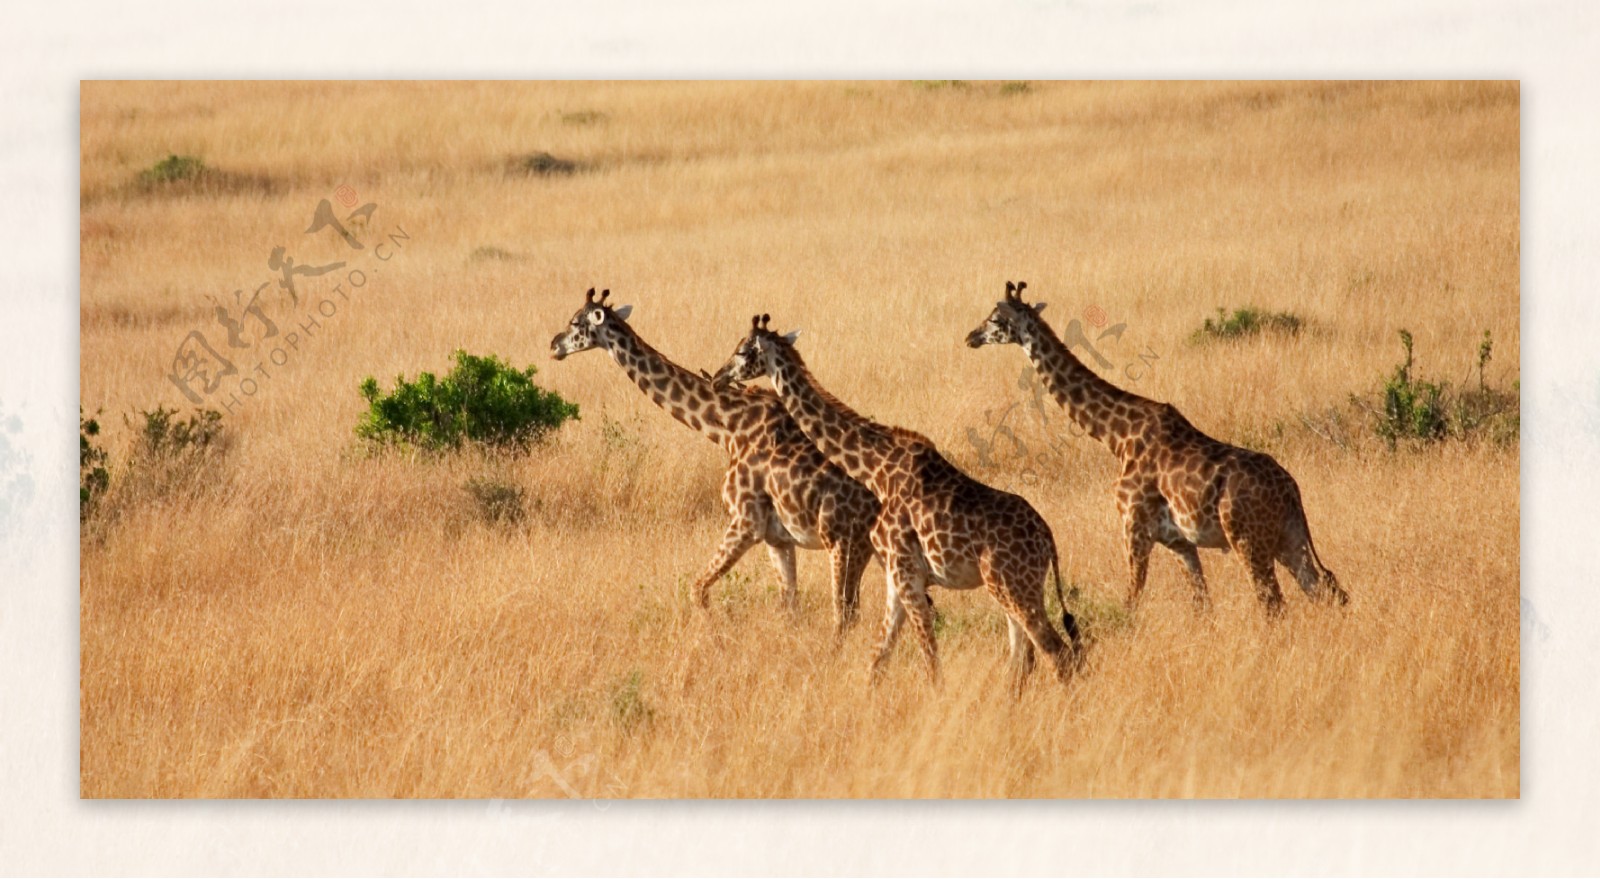 非洲草原上的长颈鹿